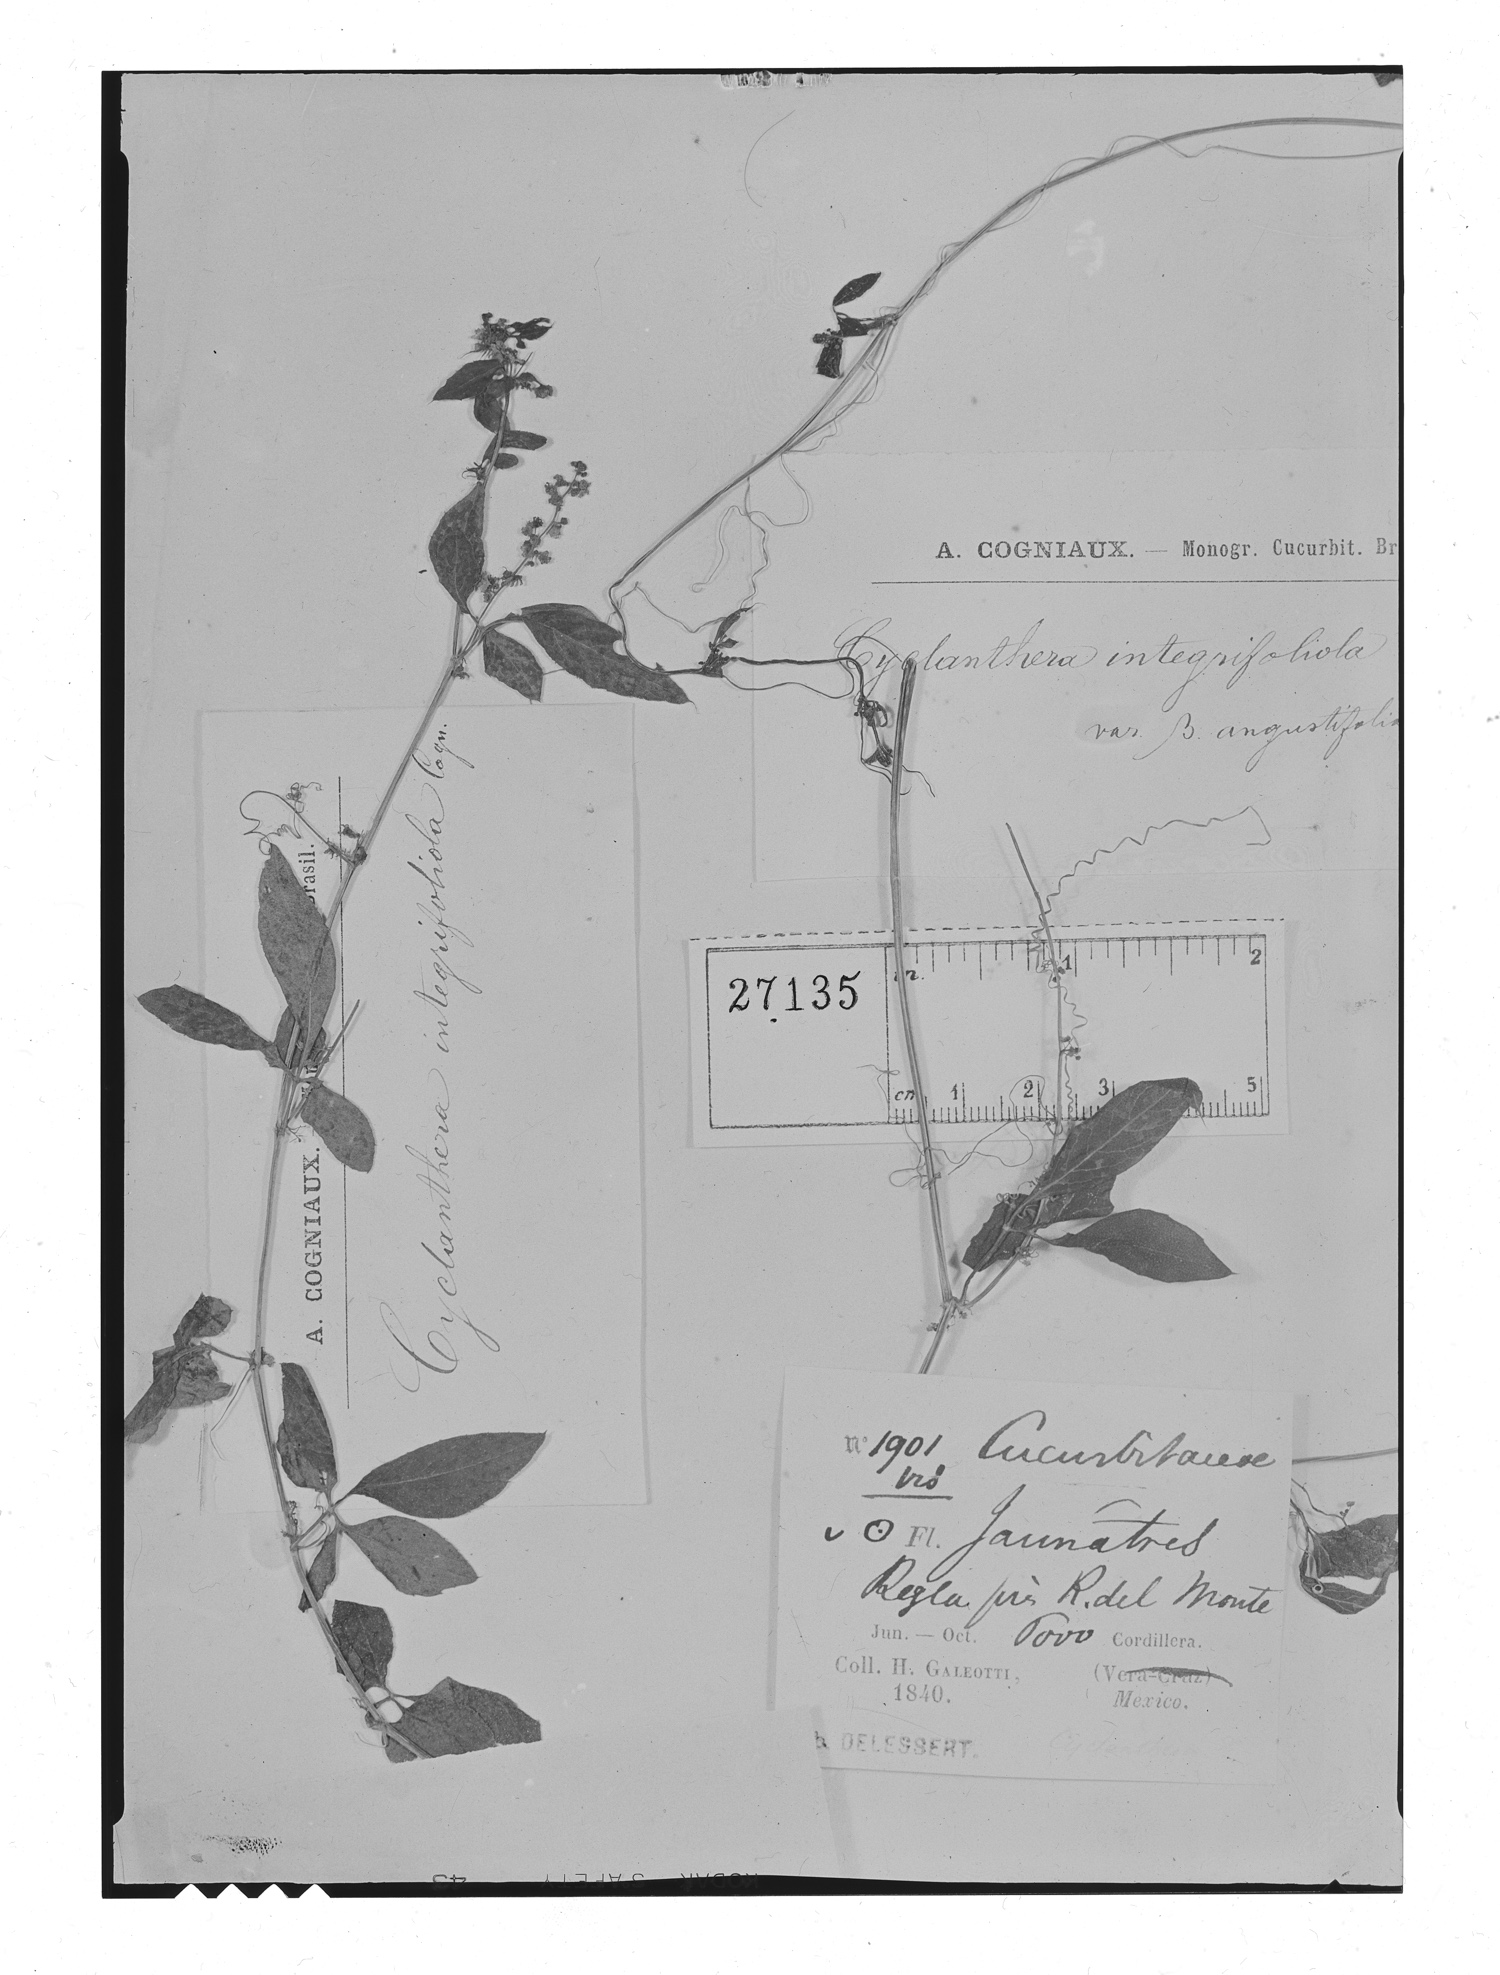 Cyclanthera integrifoliola image